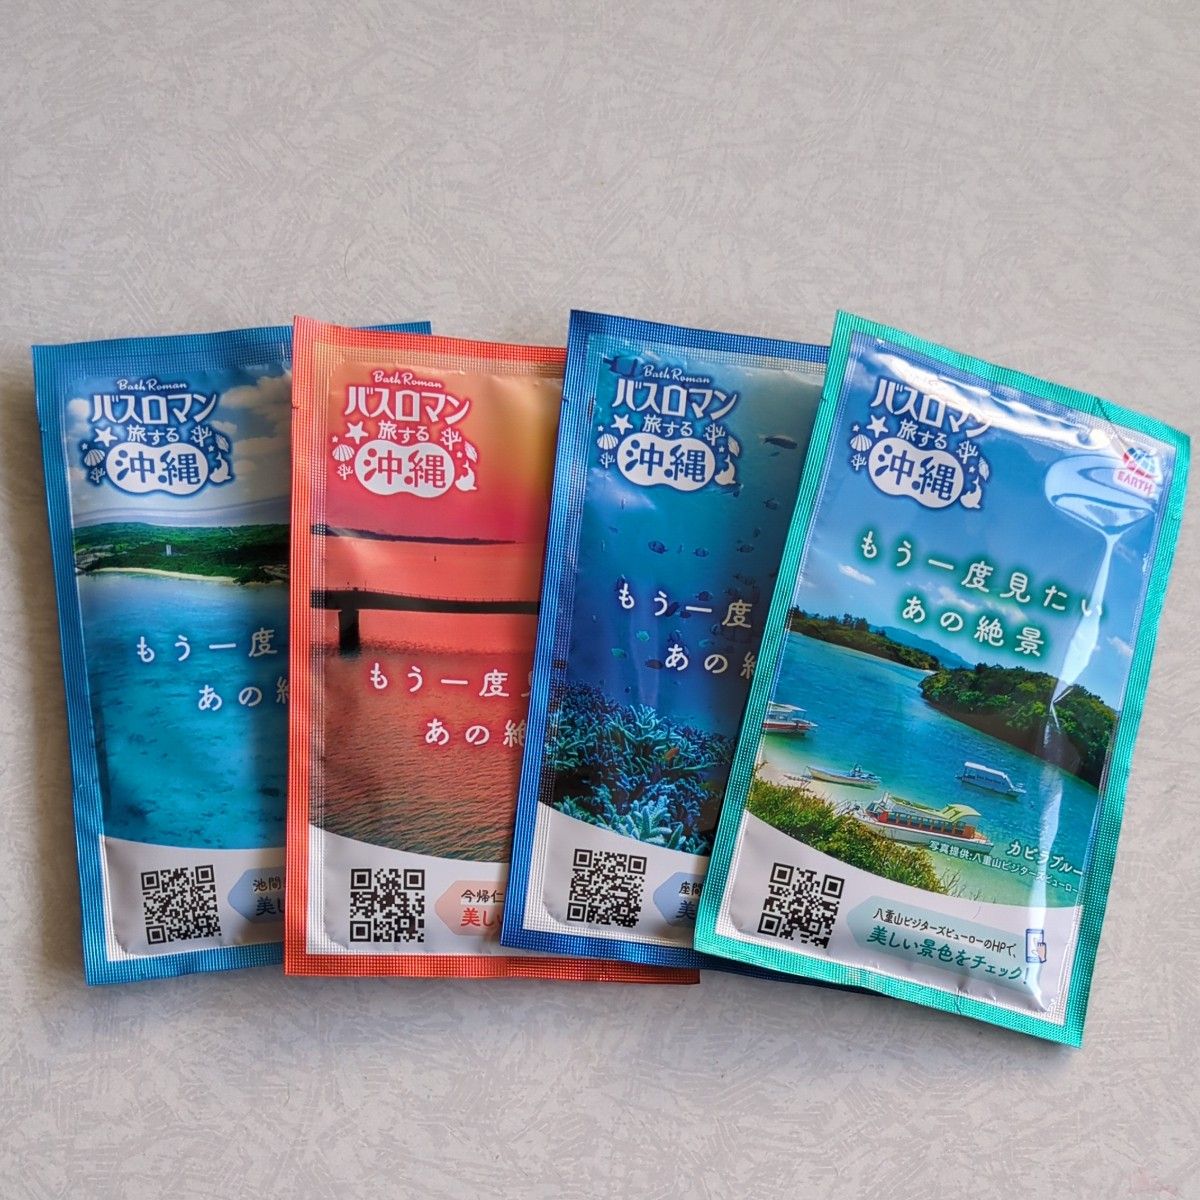 アース製薬 バスロマン 旅する沖縄 4種類 入浴剤 バスソルト